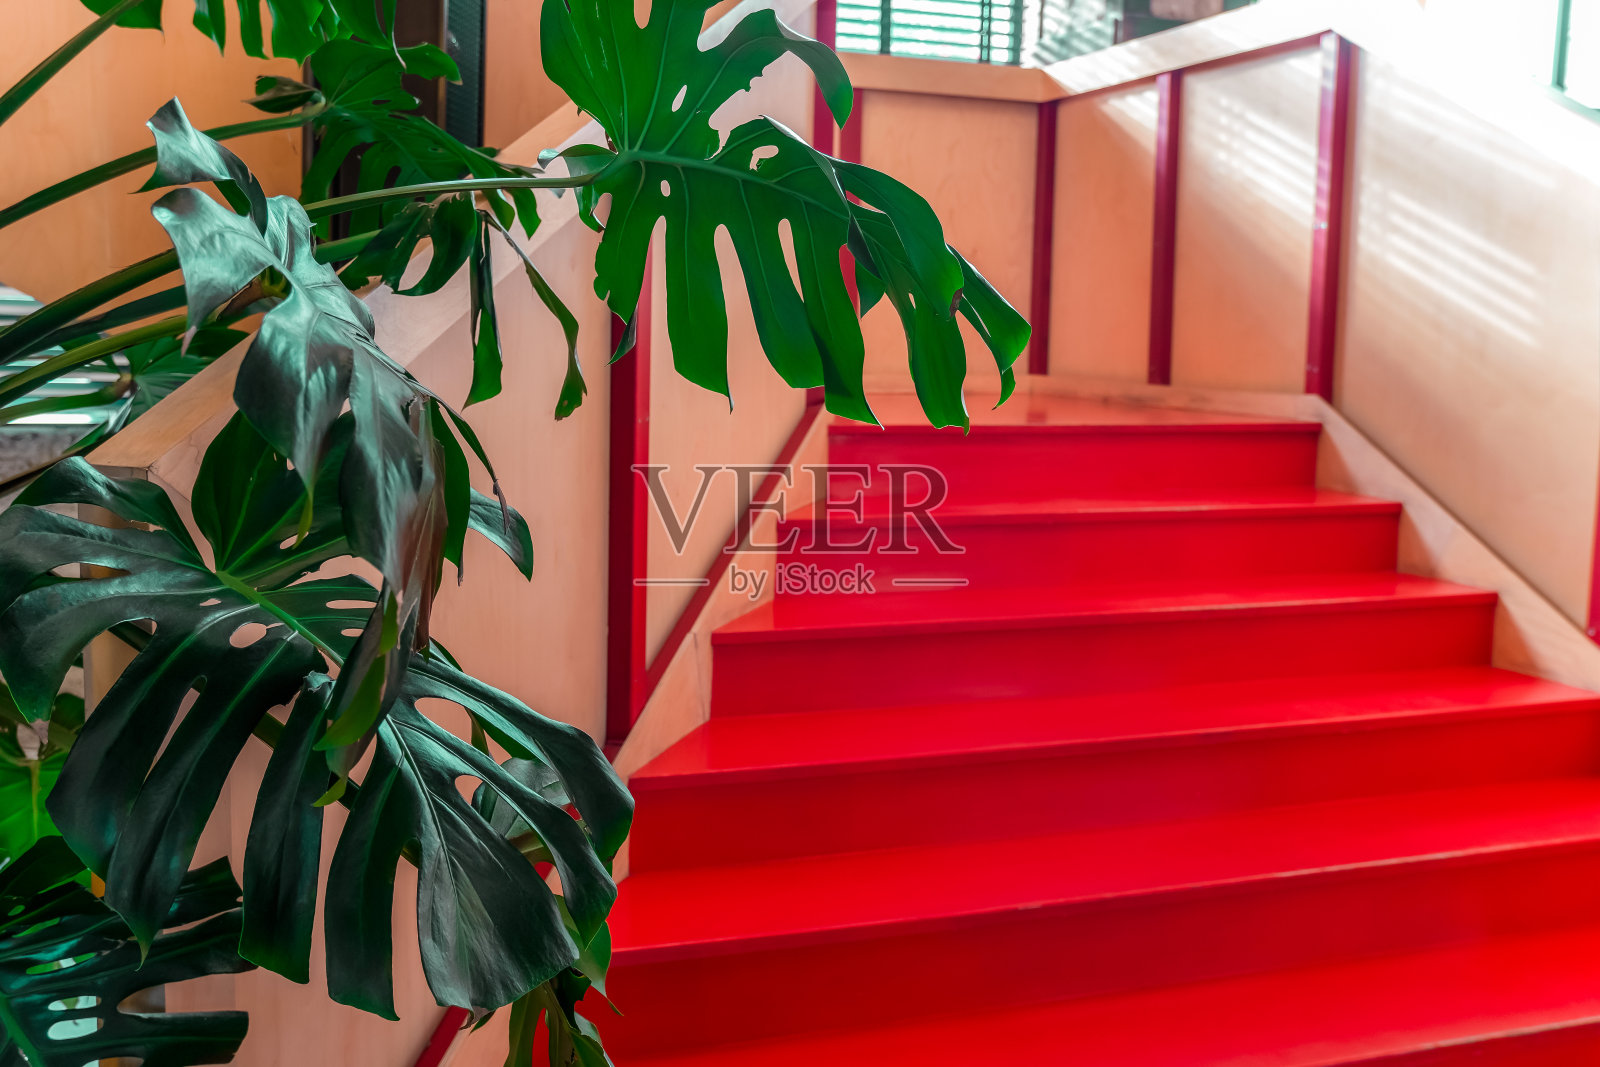 充满活力的红色楼梯与怪物树叶在室内照片摄影图片